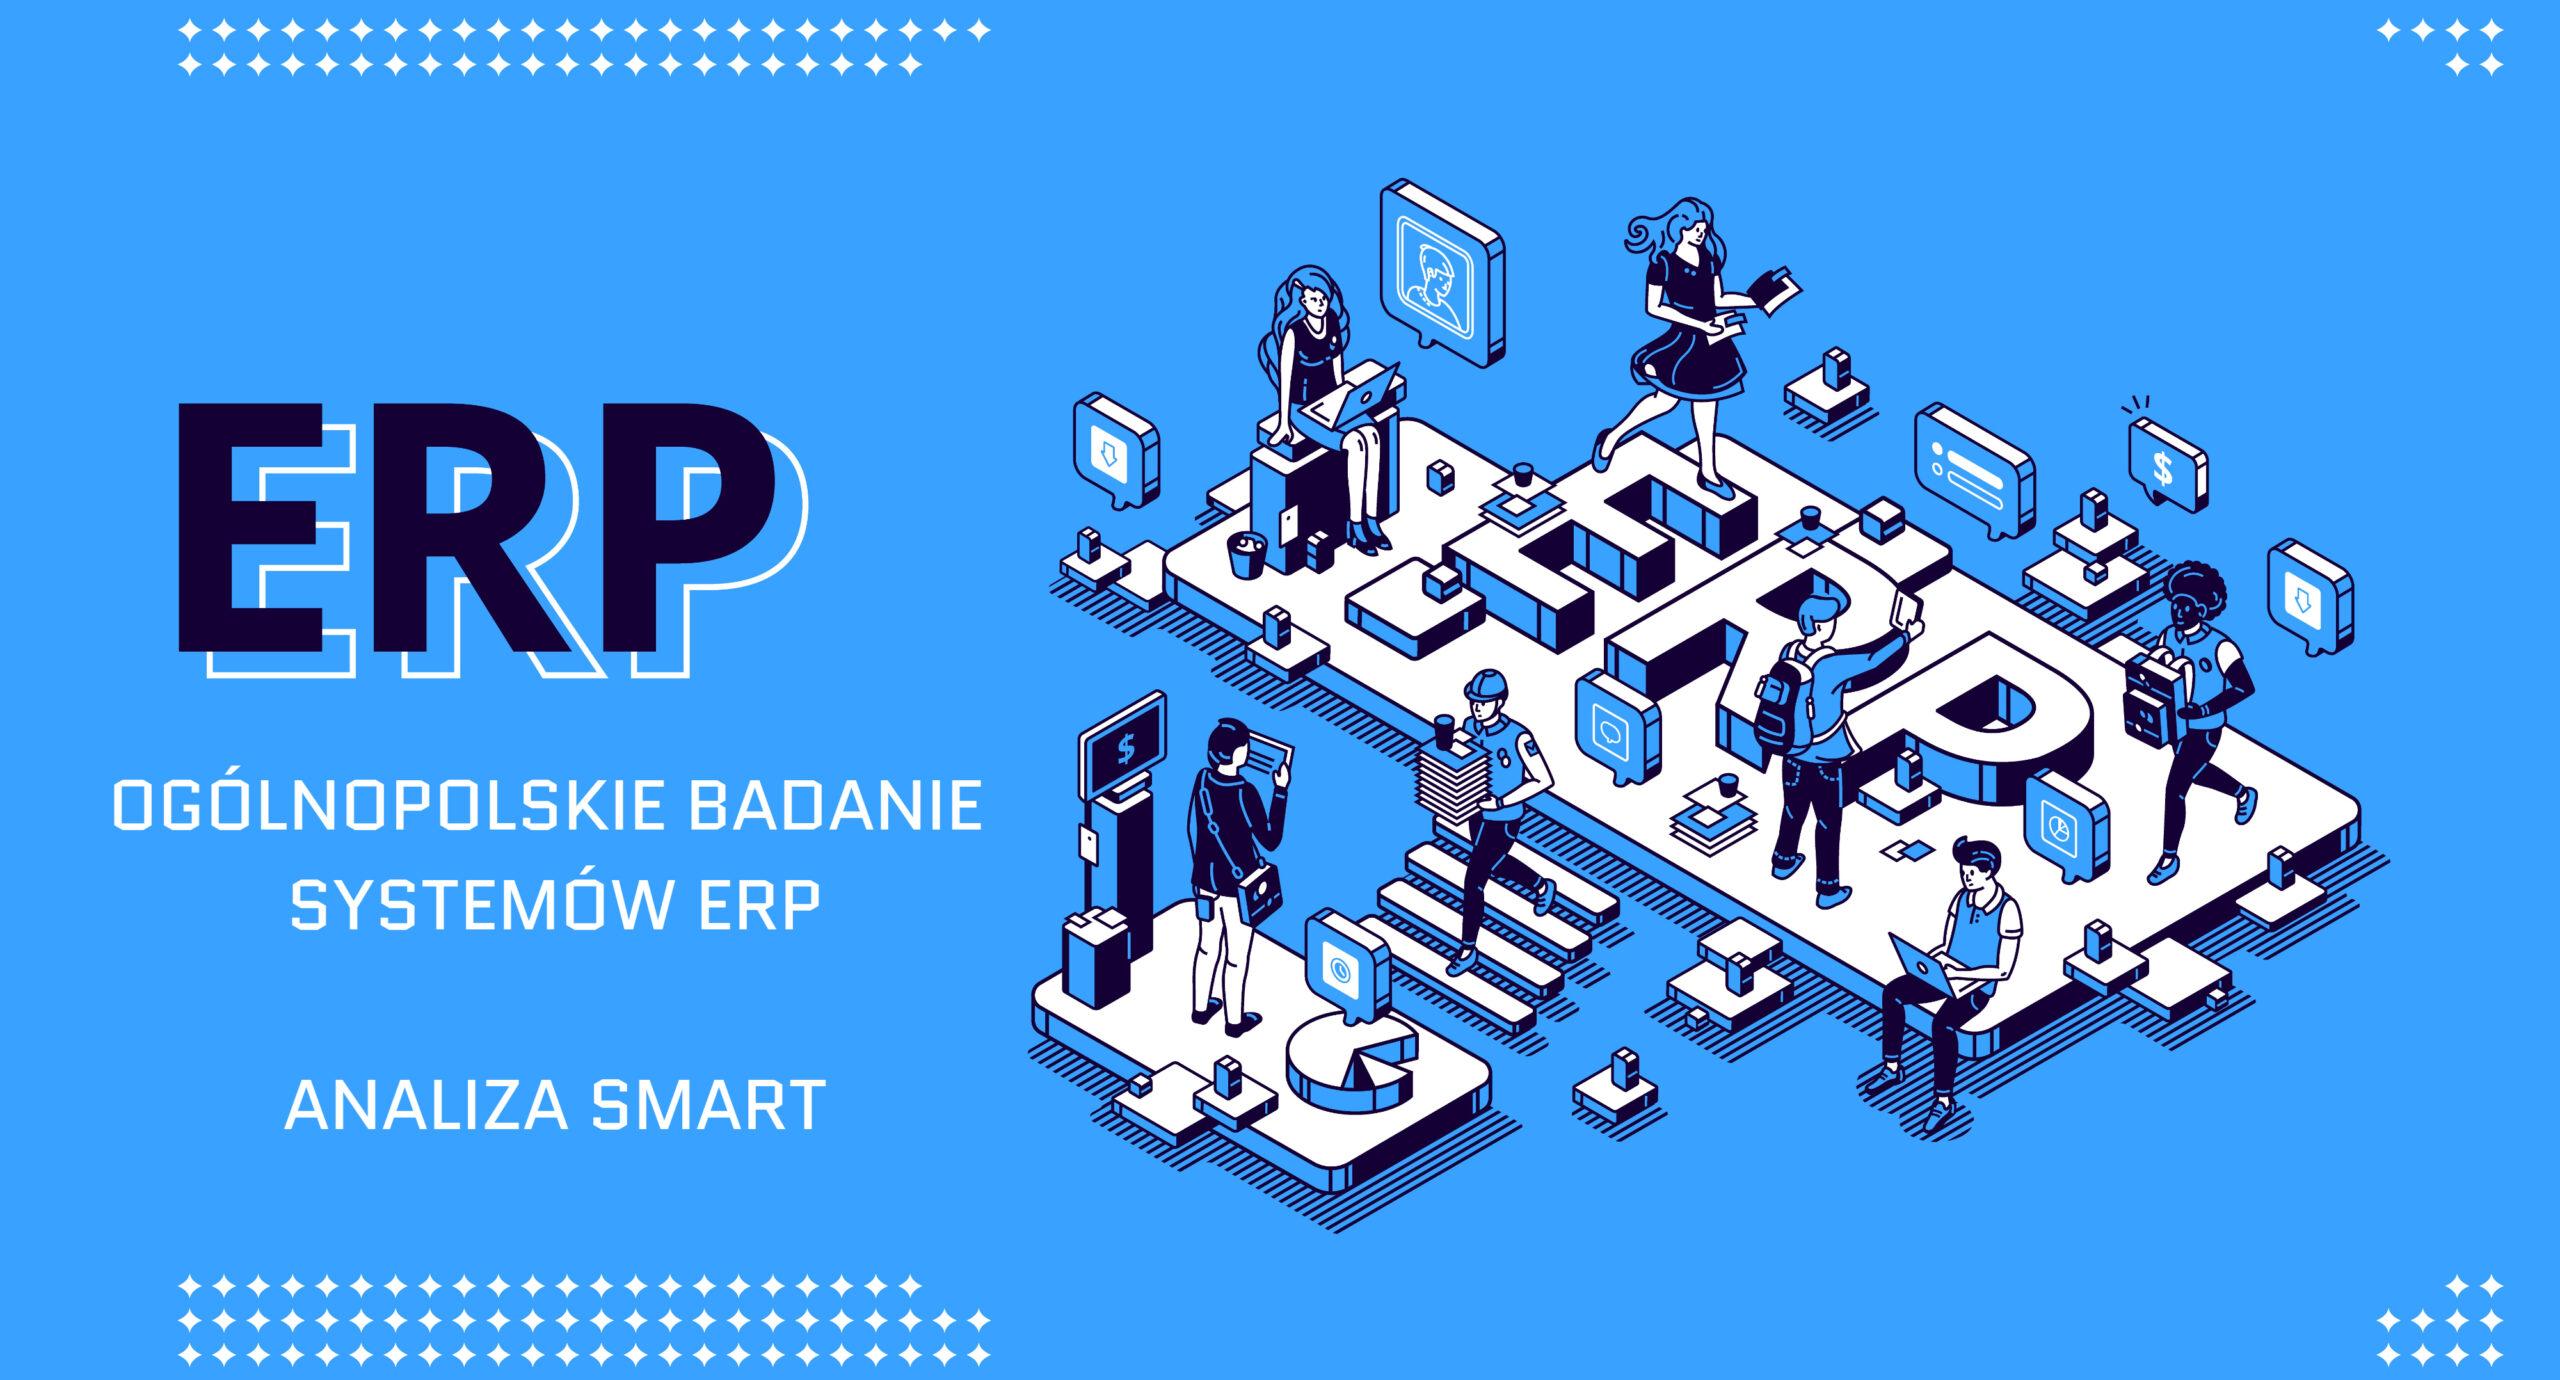 Ogólnopolskie badanie systemów ERP - Analiza Smart